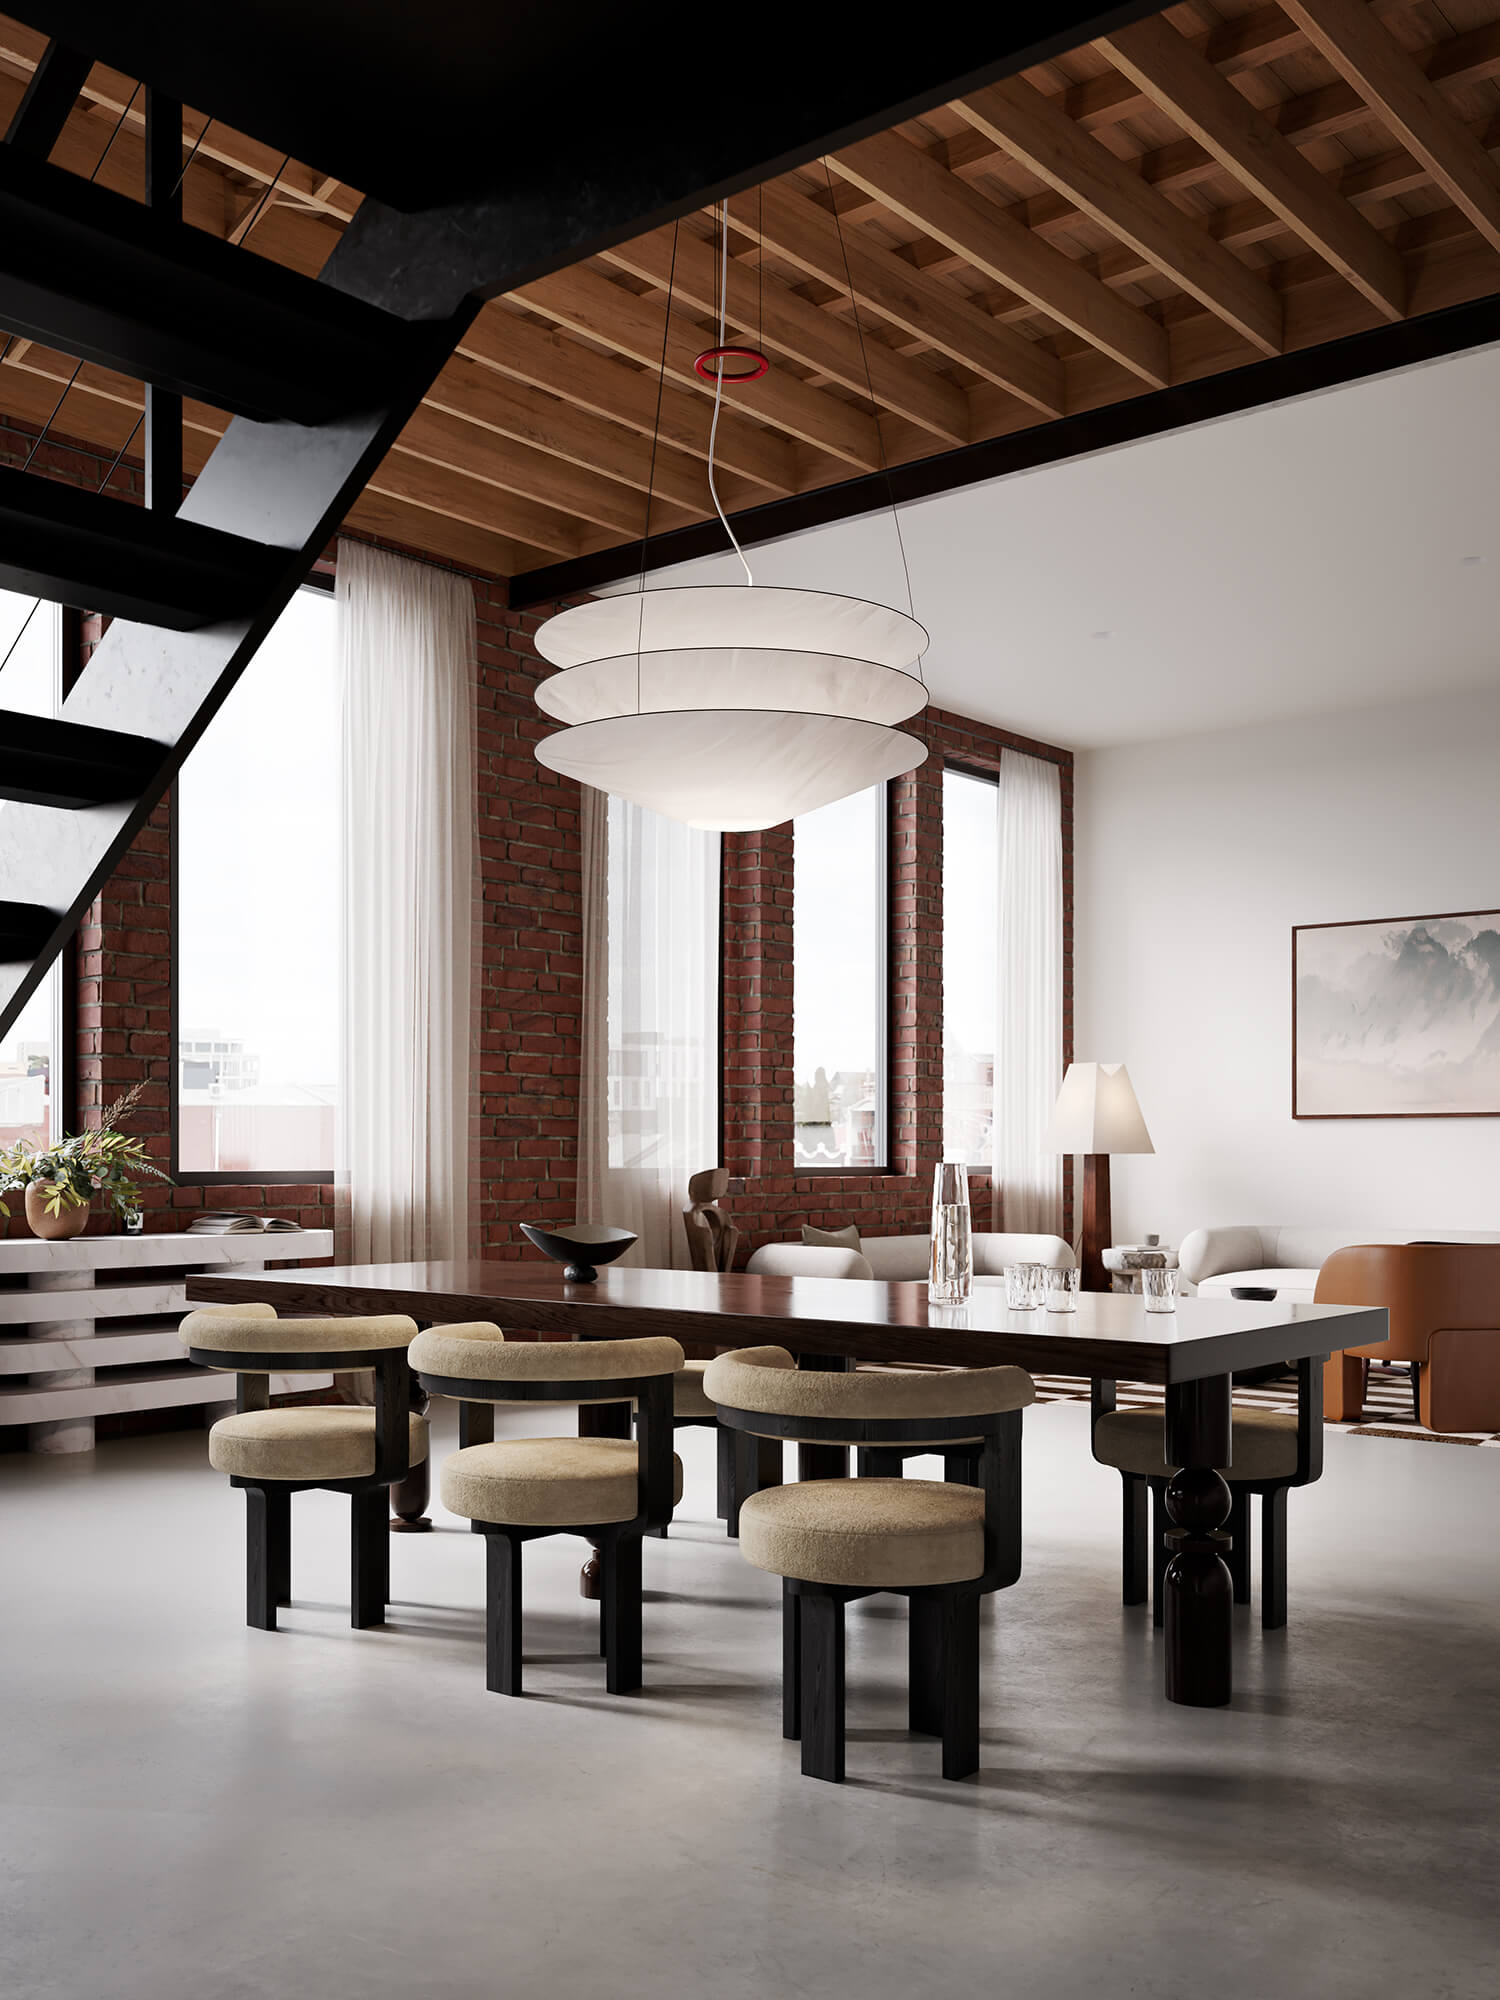 <p>Oxford St<br />
Melbourne, Australia</p>
<p>Furniture and Interior Design by MOGAMMA</p>
